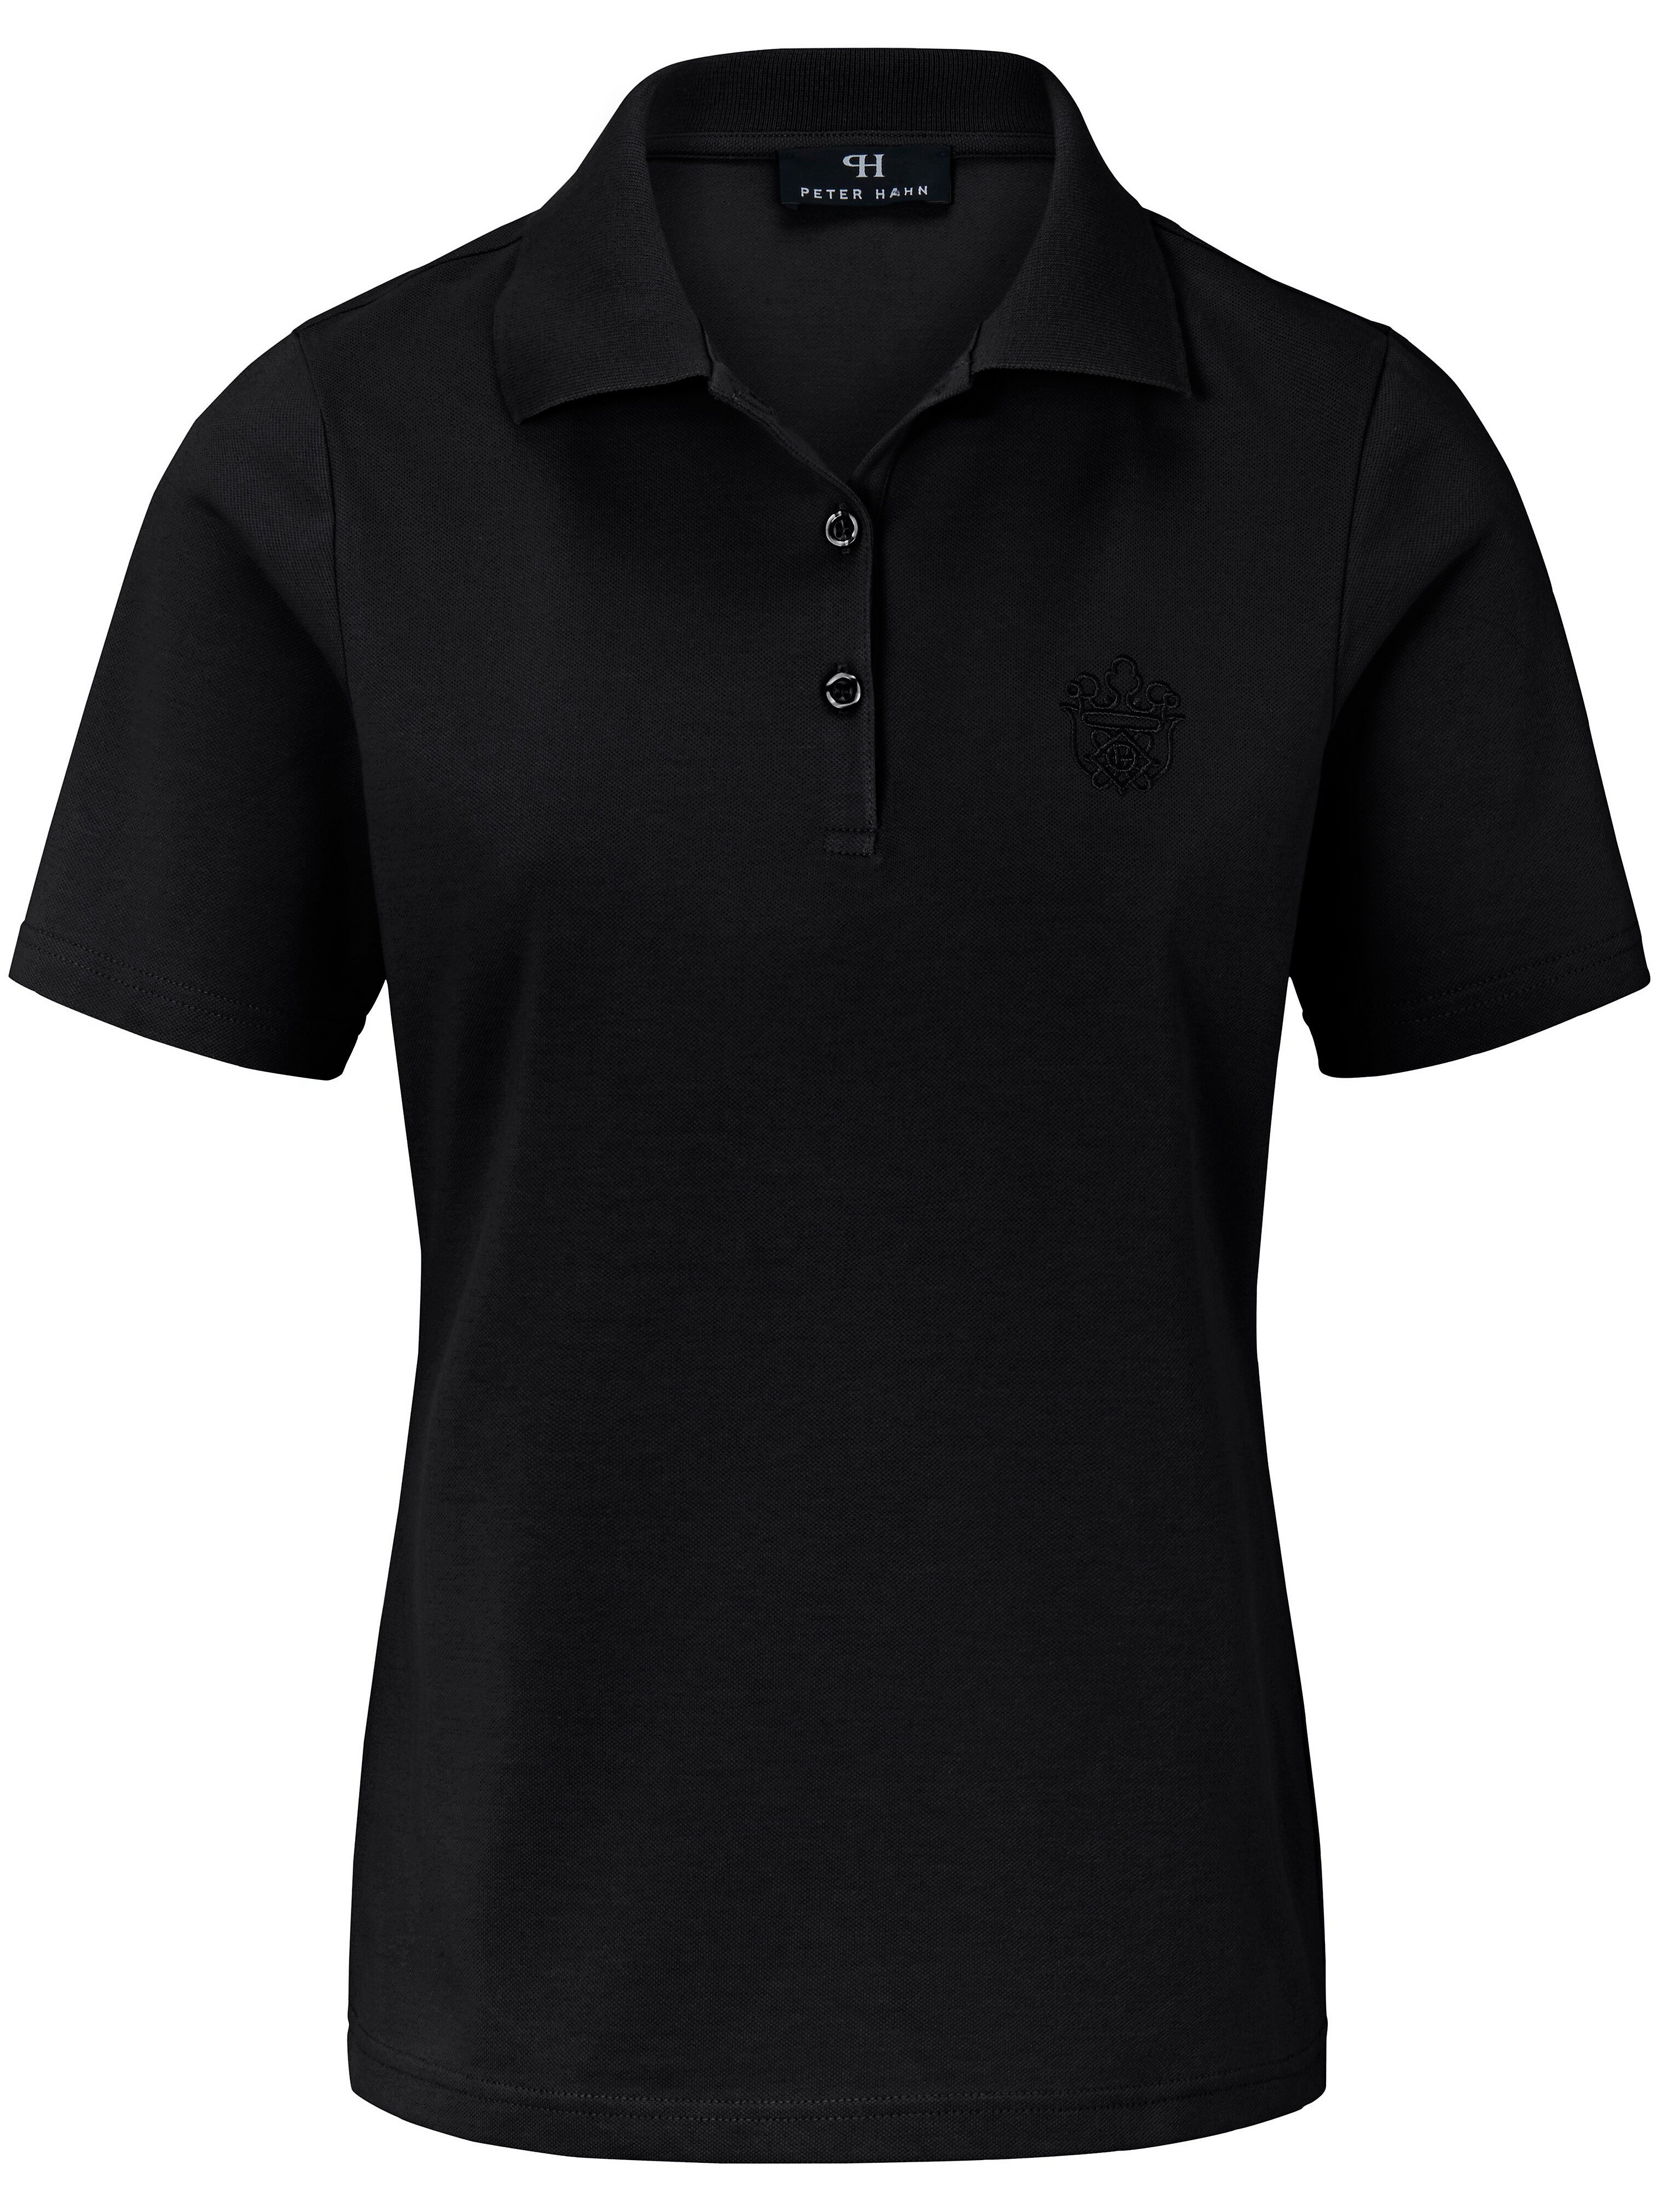 Polo shirt design Andrea Peter Hahn black